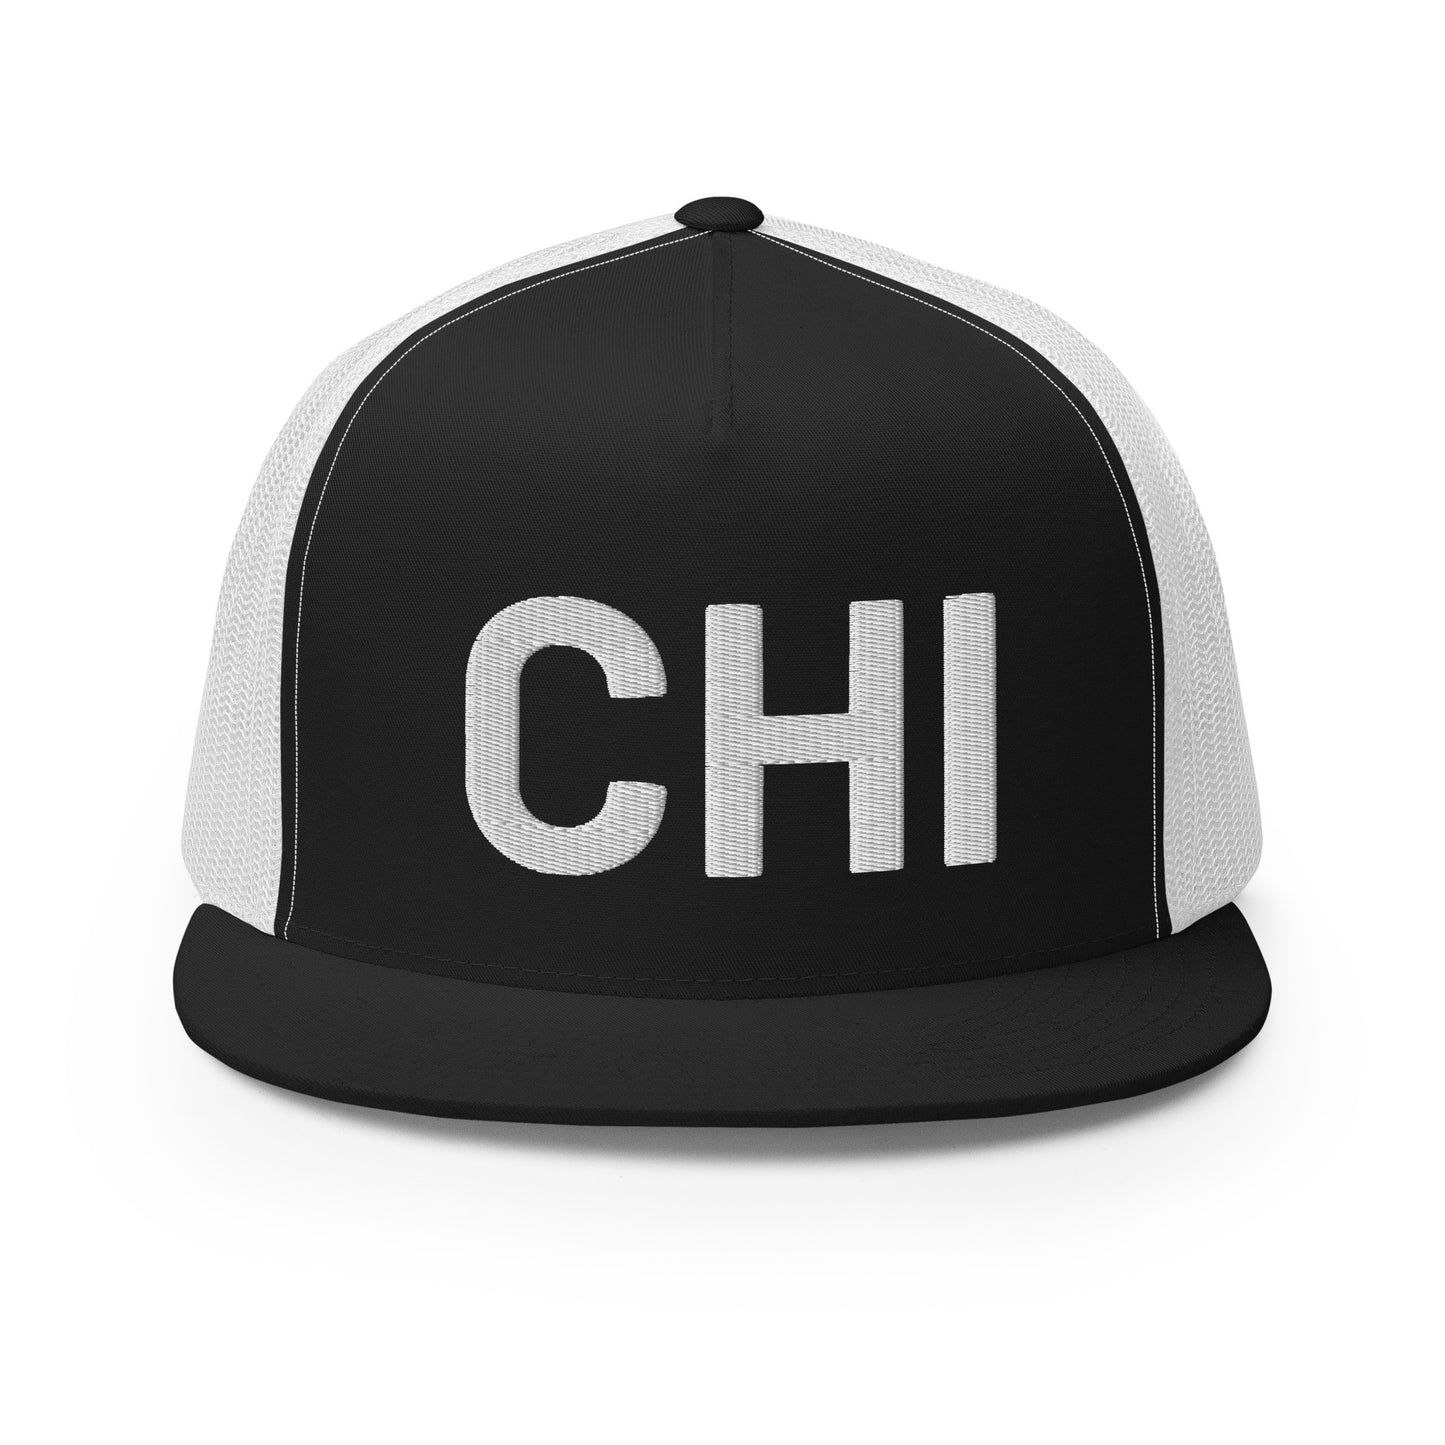 CHI-TOWN Trucker Hat